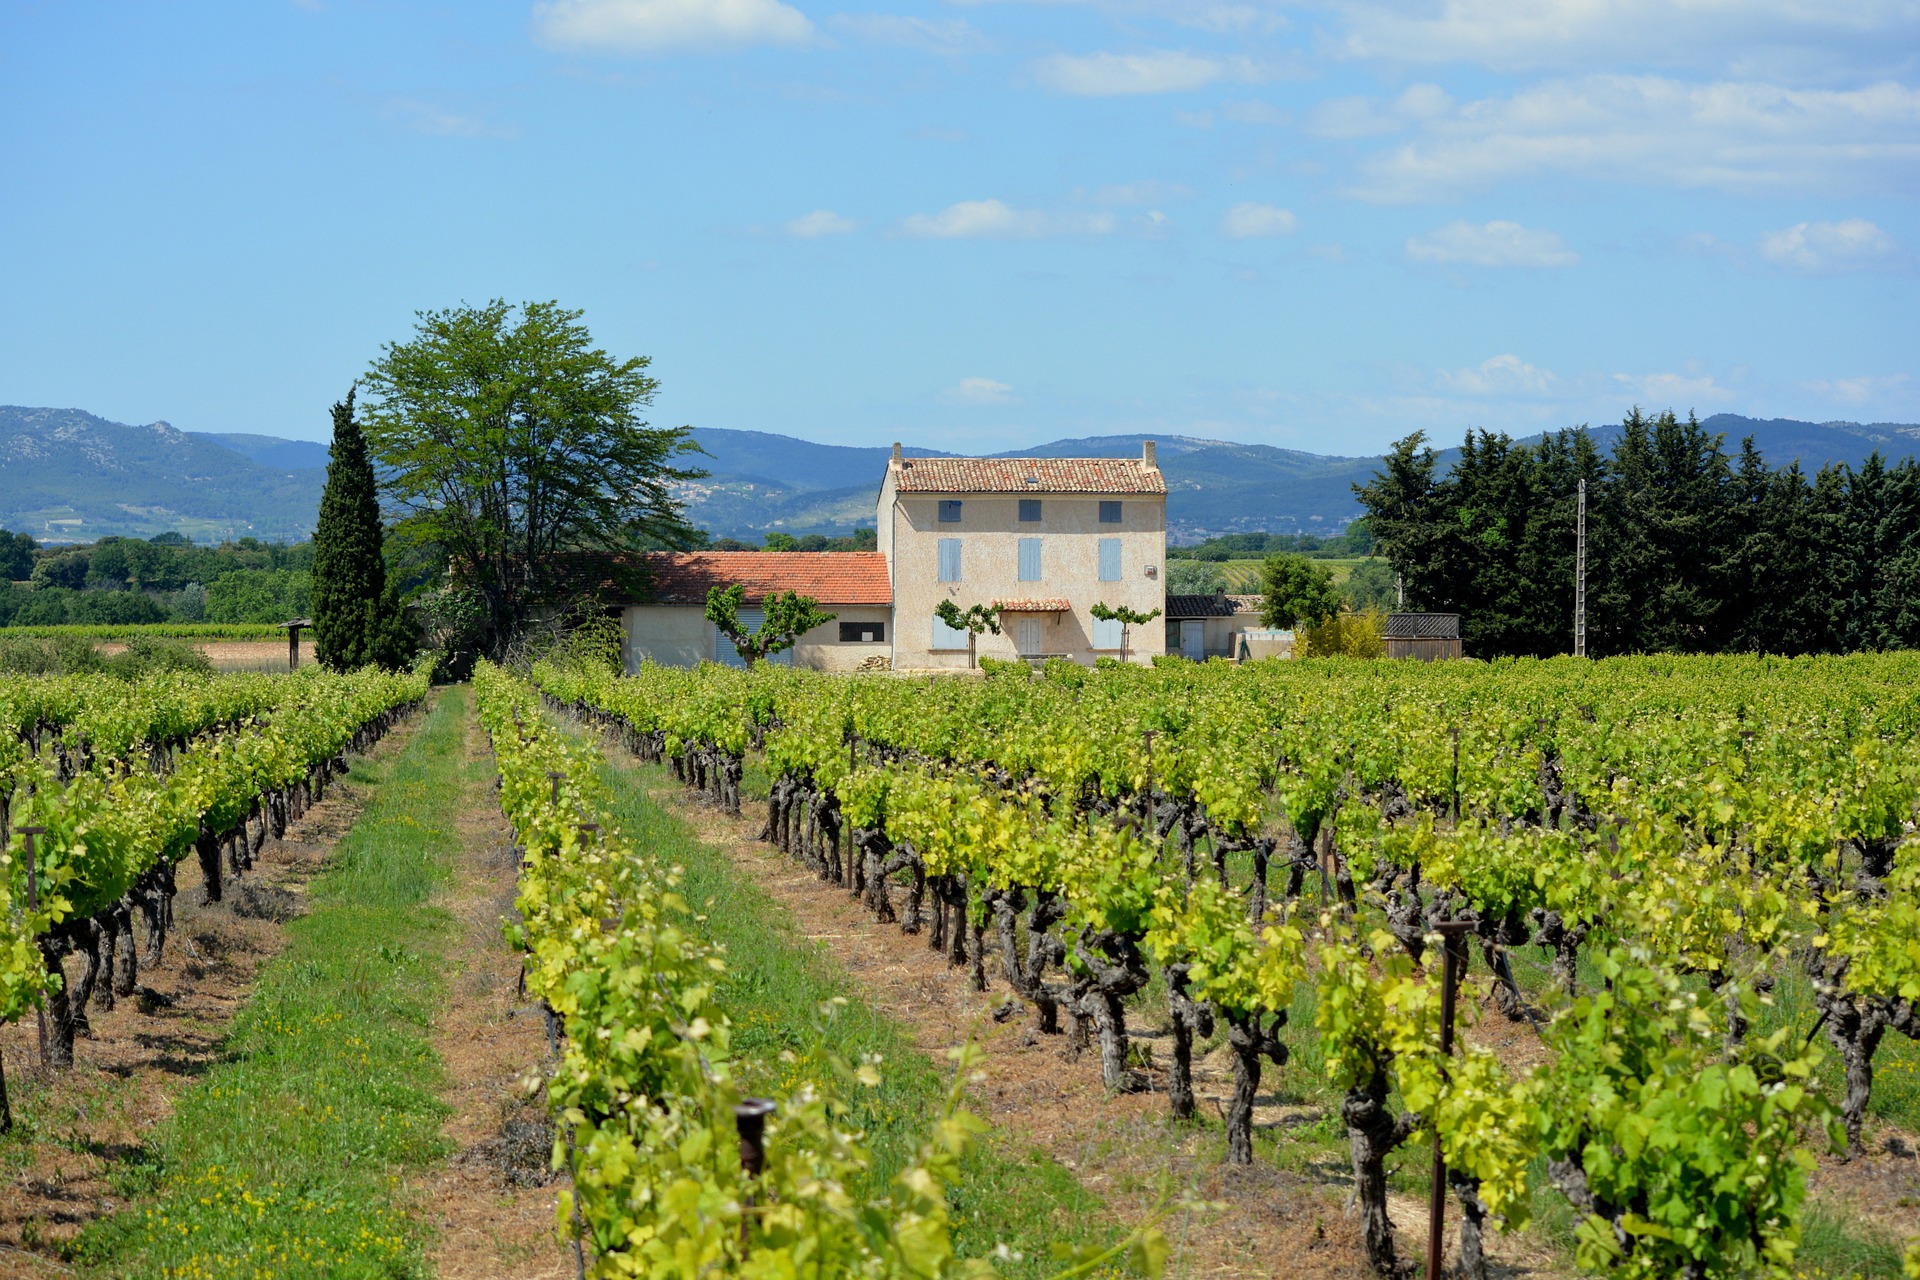 Idée de week-end: découvrir le vignoble de France